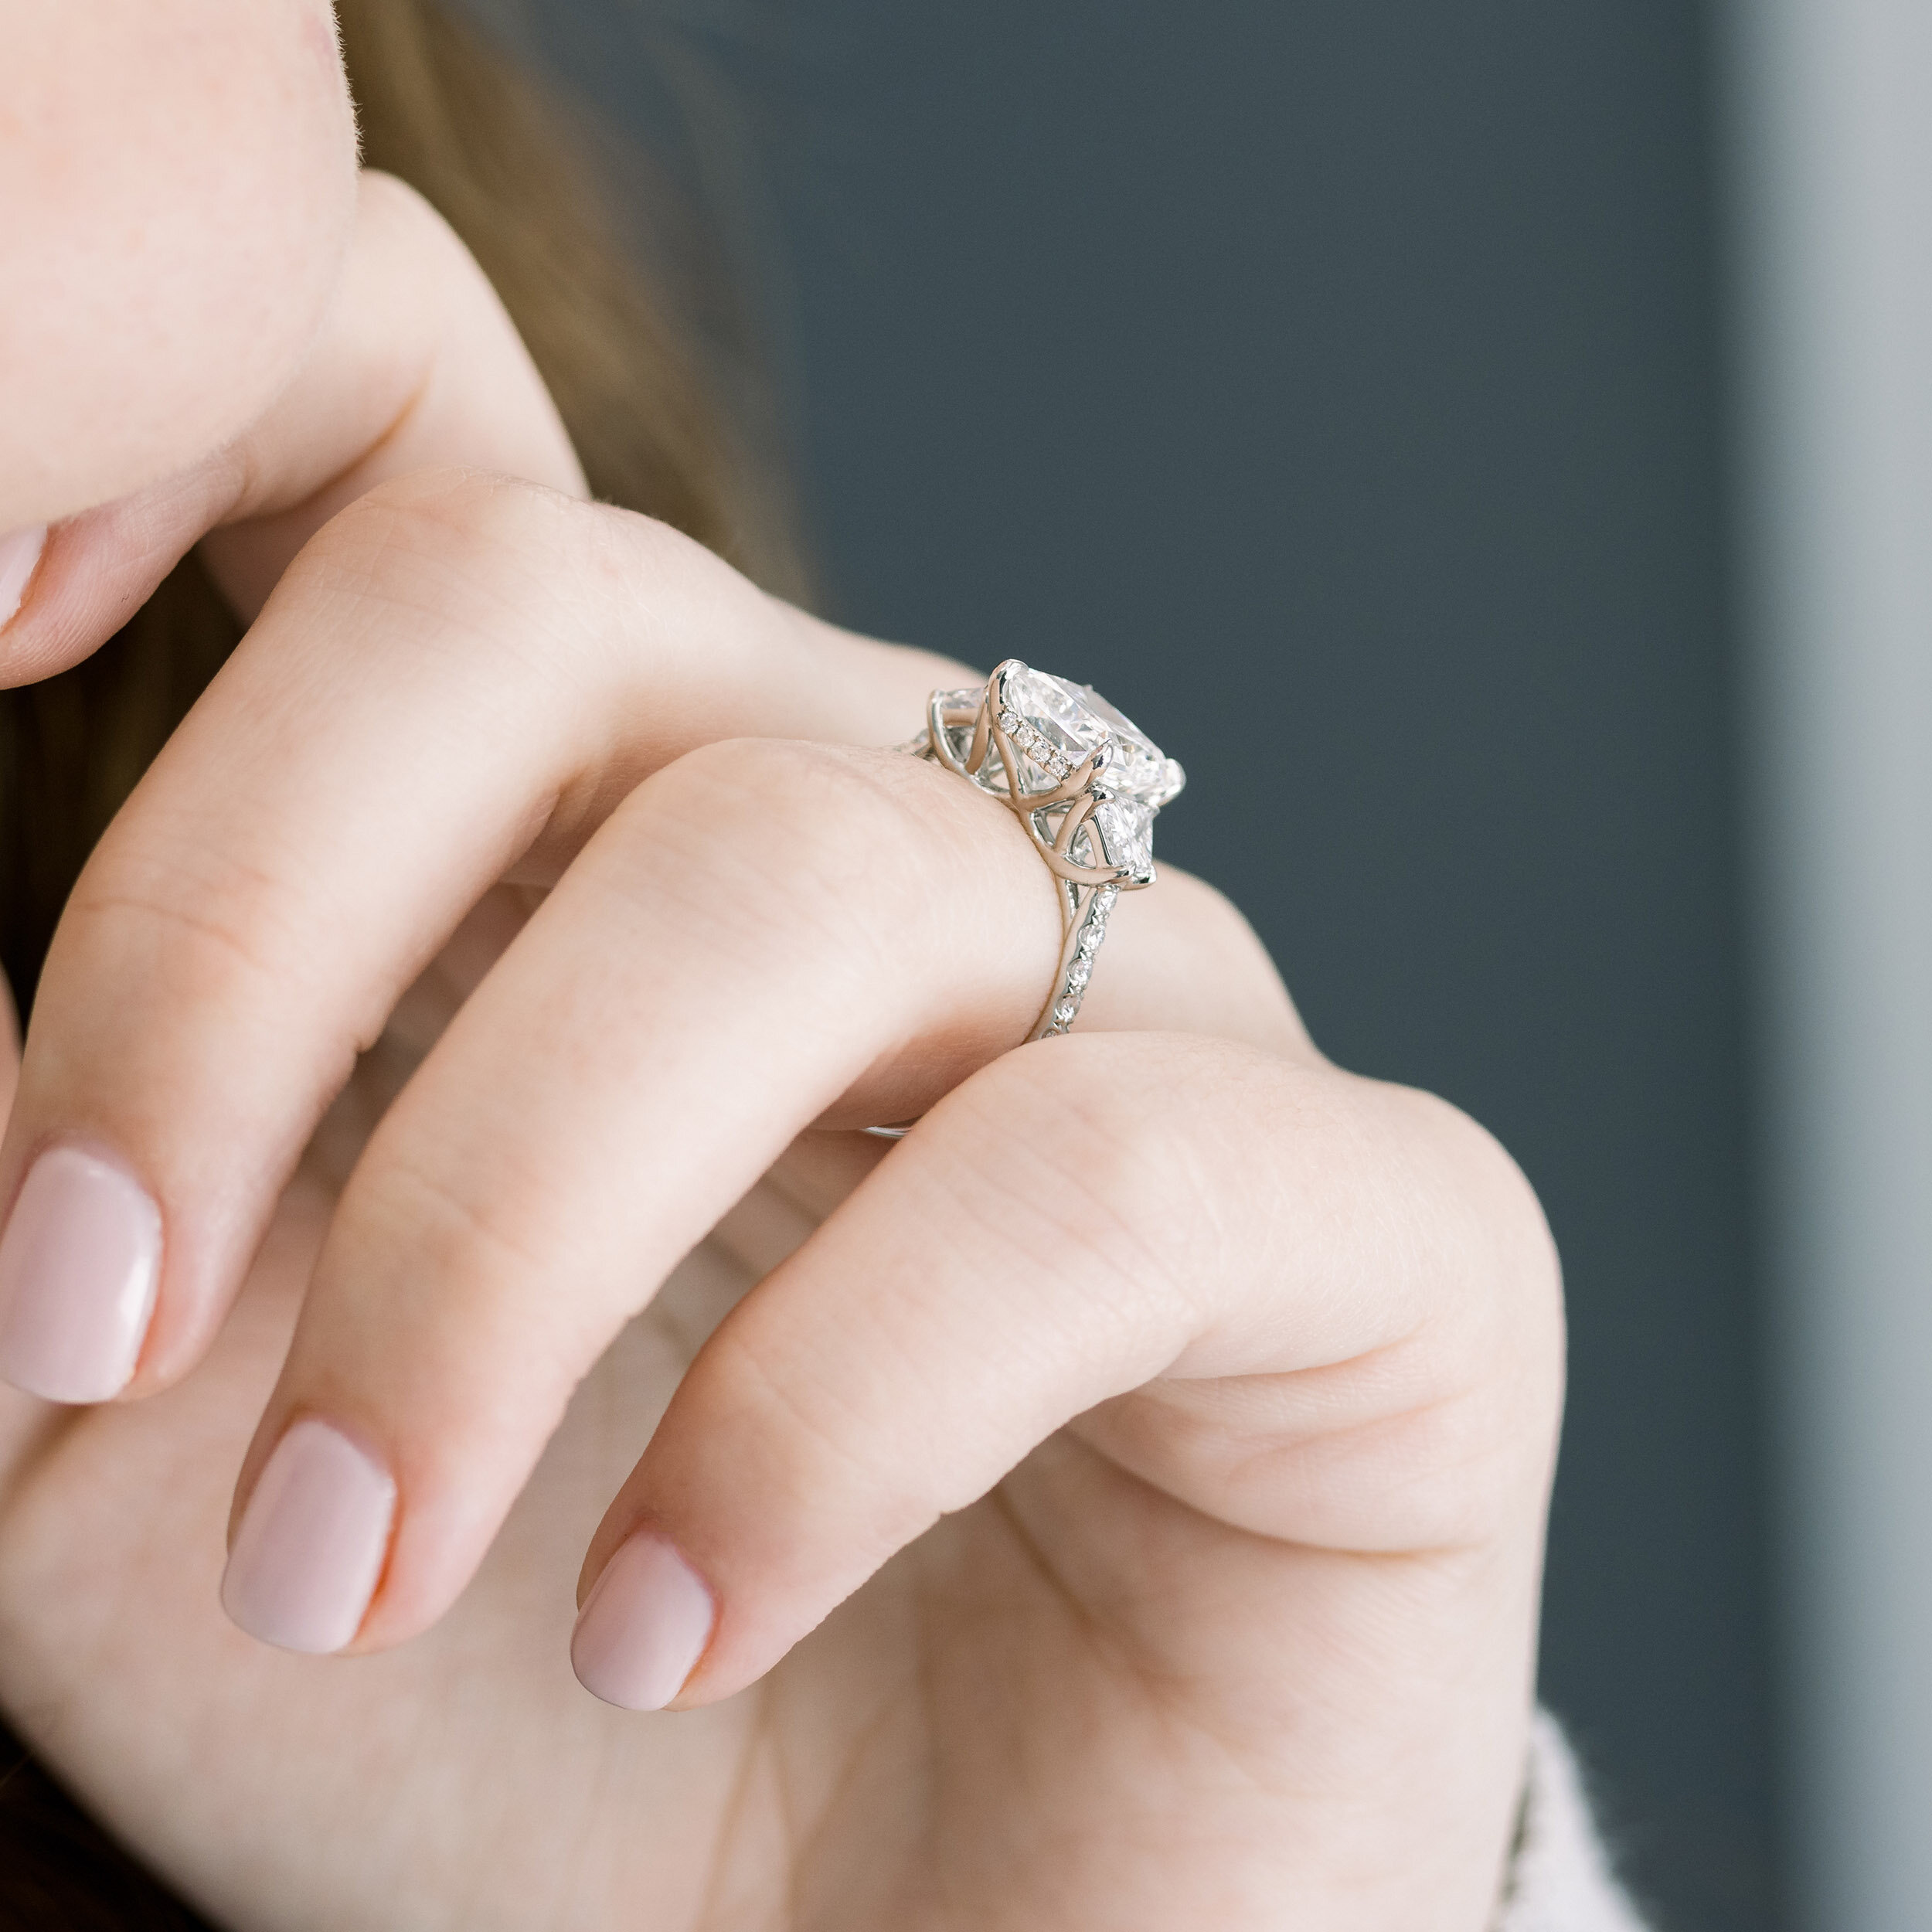 Sapphire & Diamond Three-Stone Engagement Ring 18K White Gold